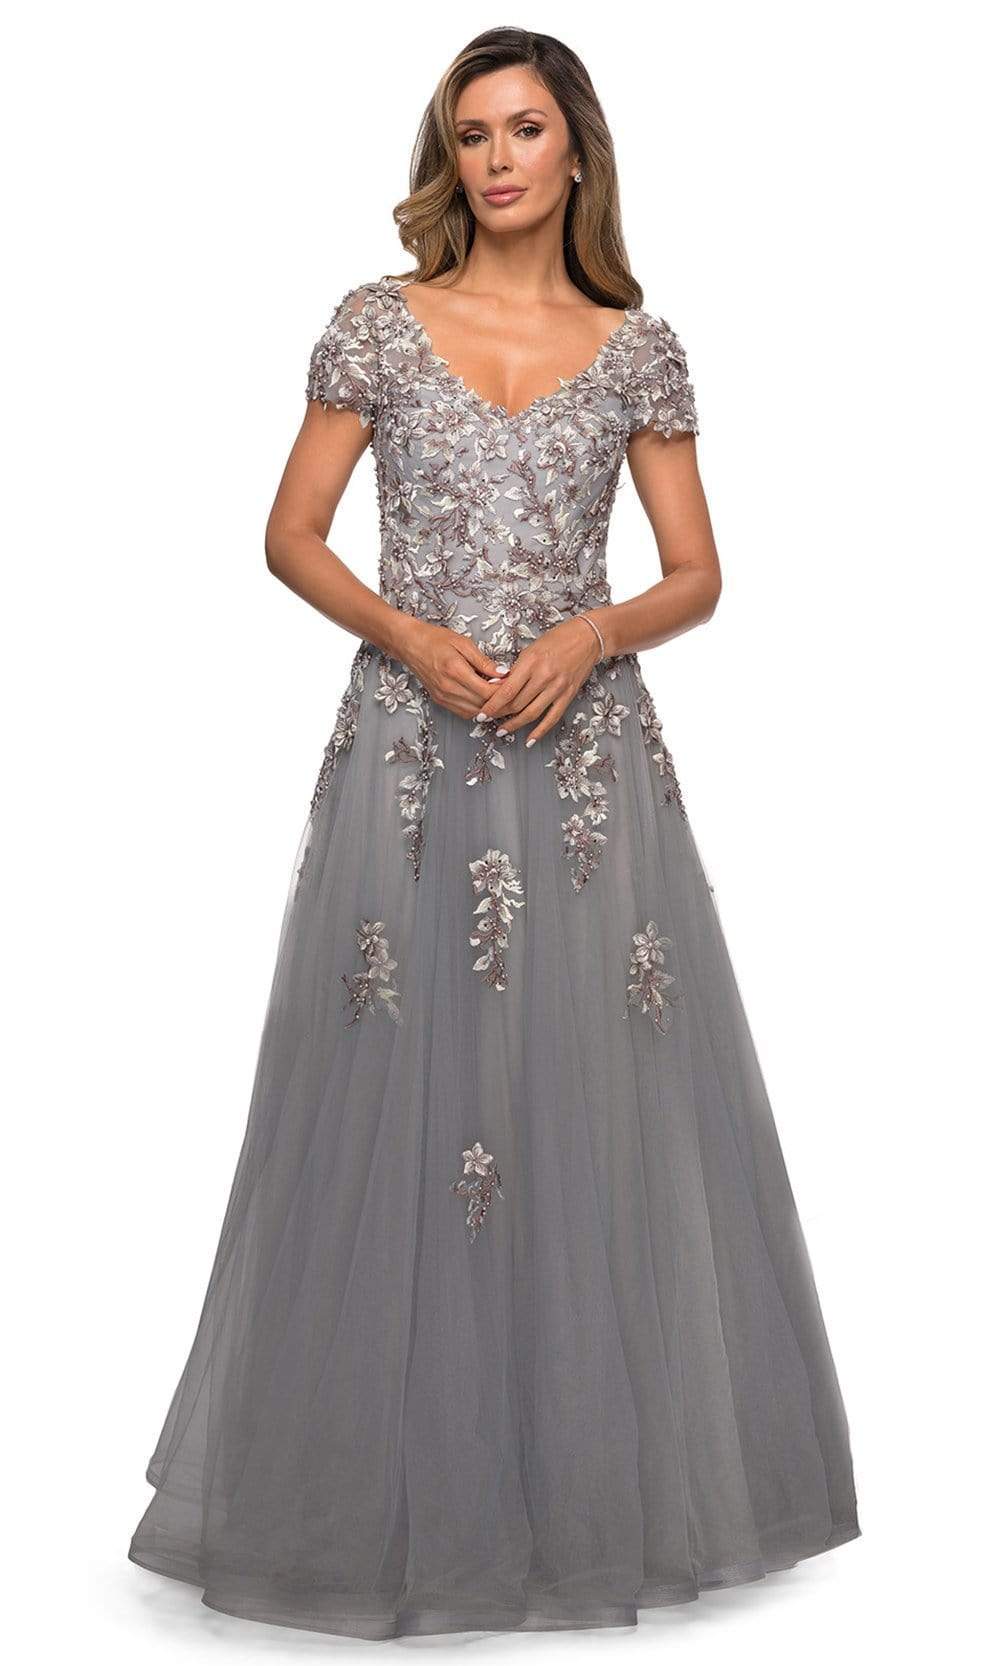 La Femme - 27968 V Neck Lace Appliques Evening Gown
